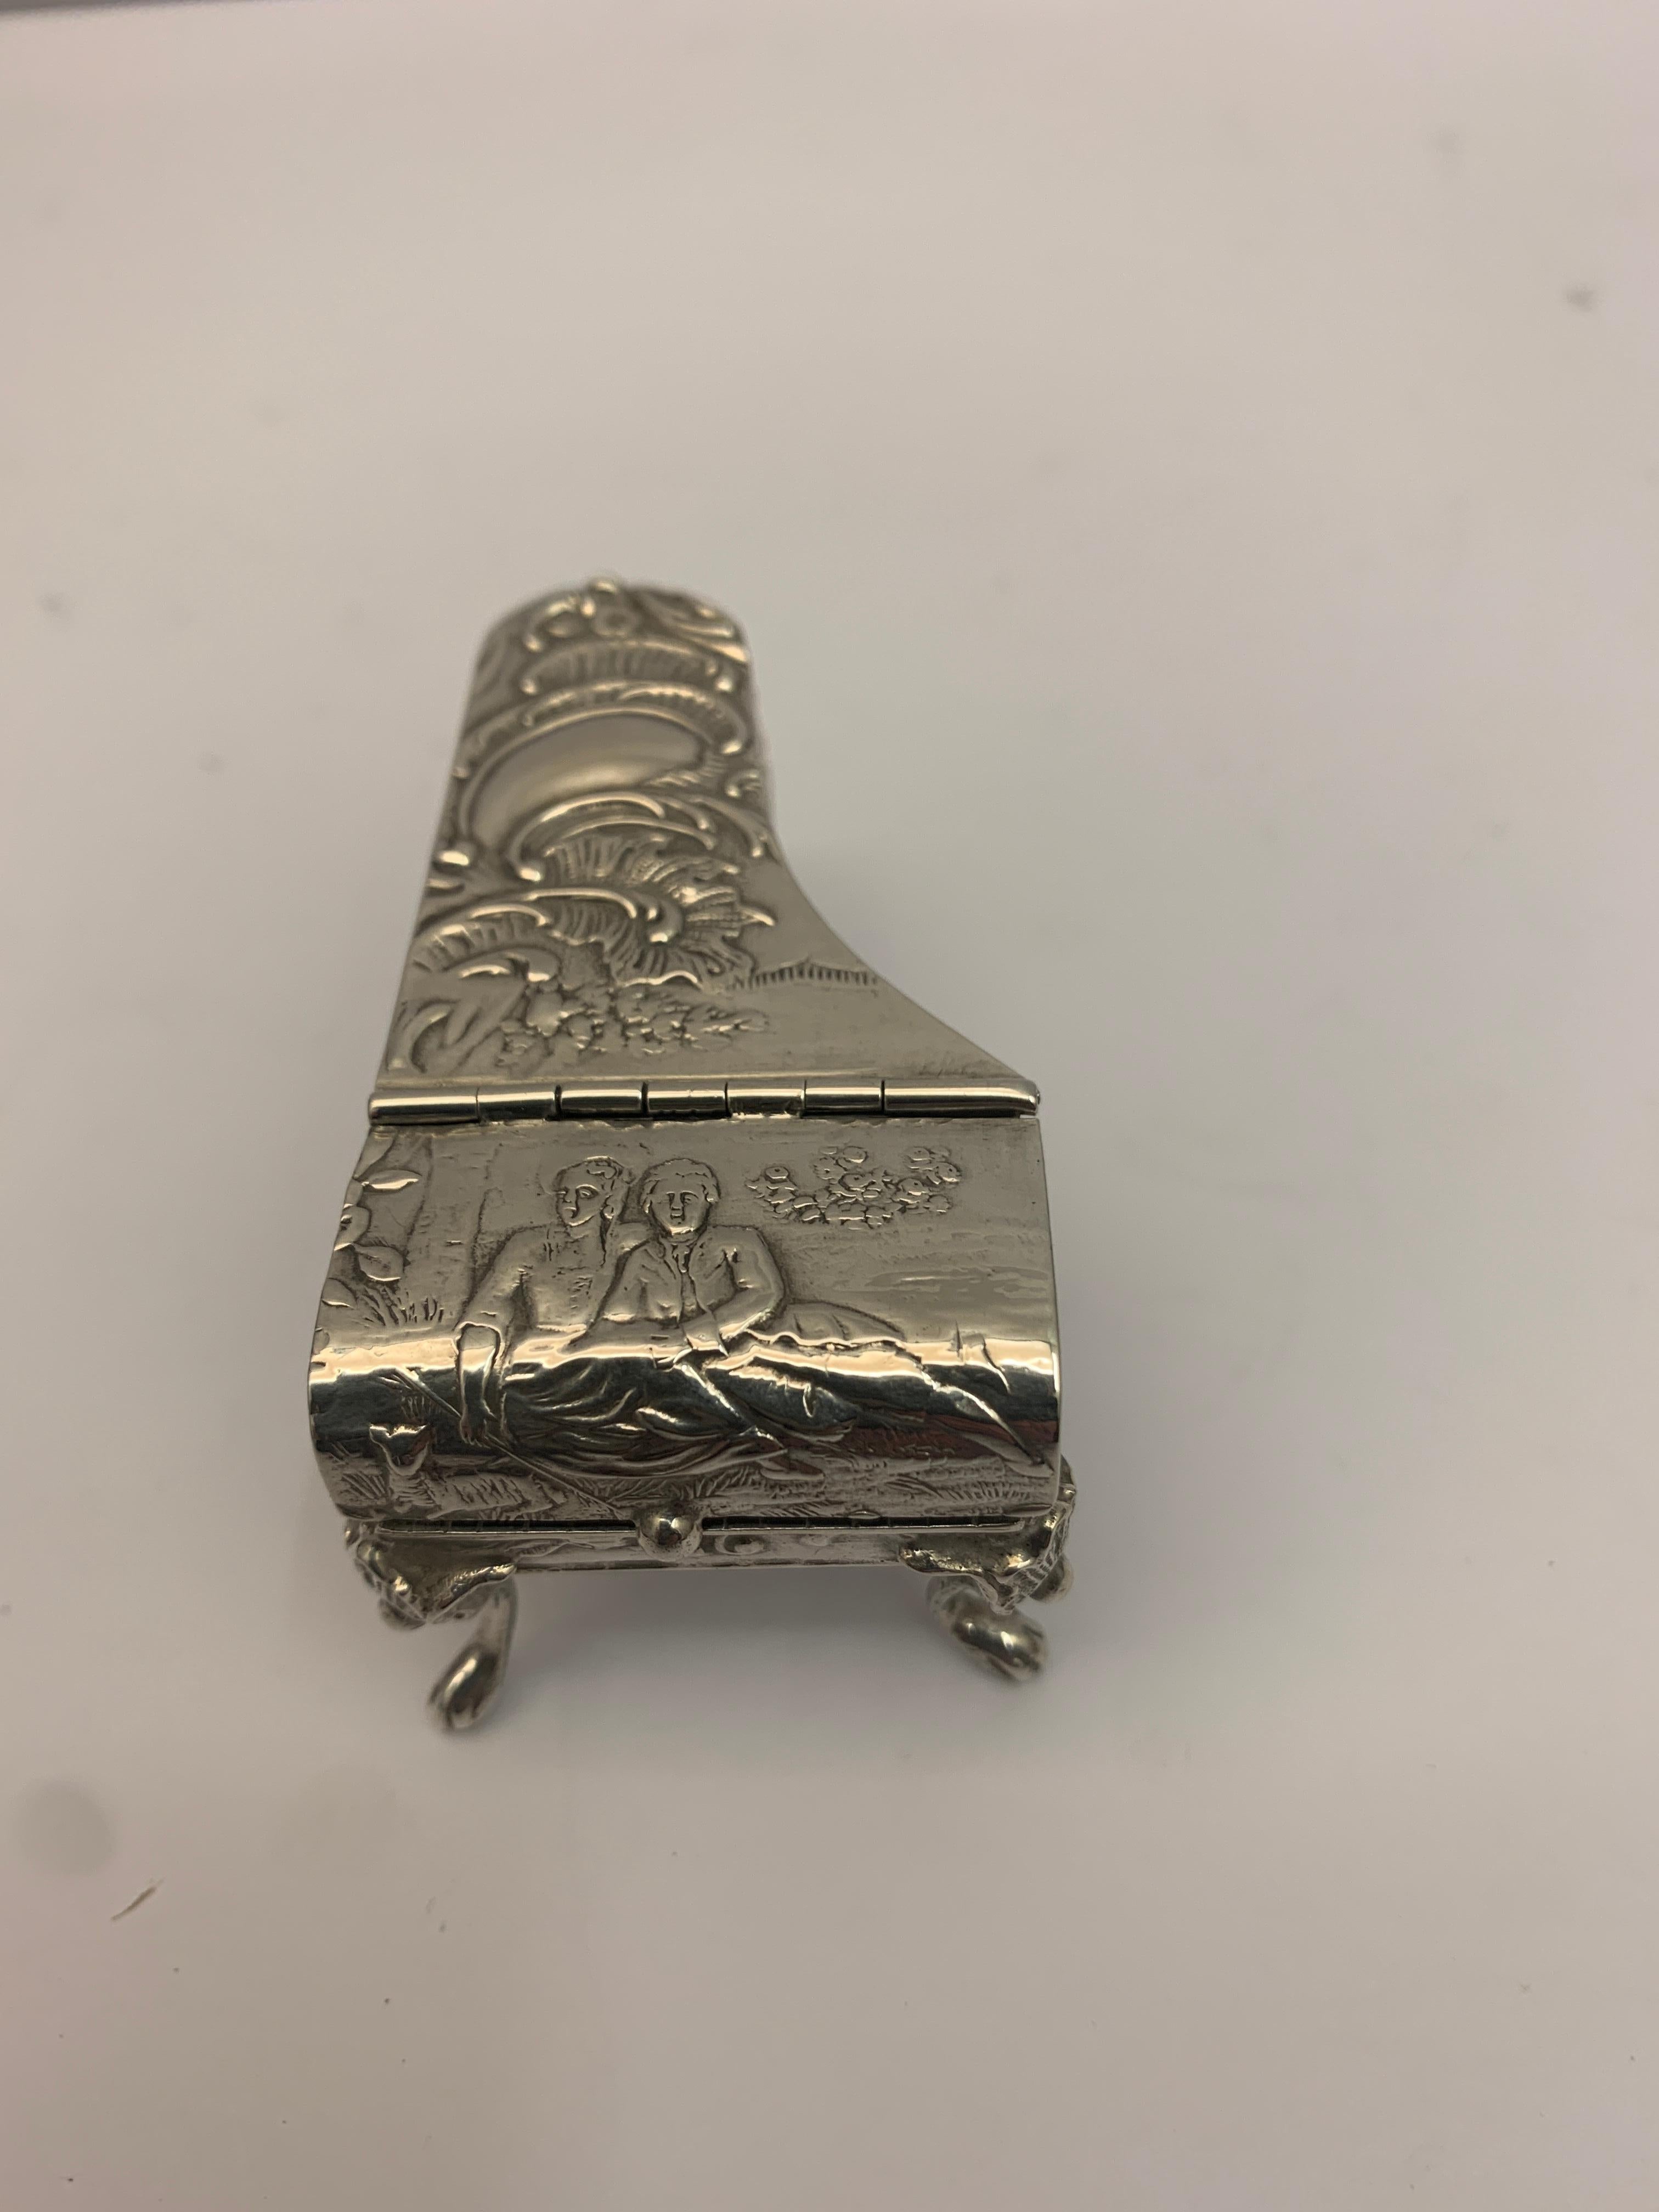 Miniature silver piano shaped vesta. 

Made in 1900.